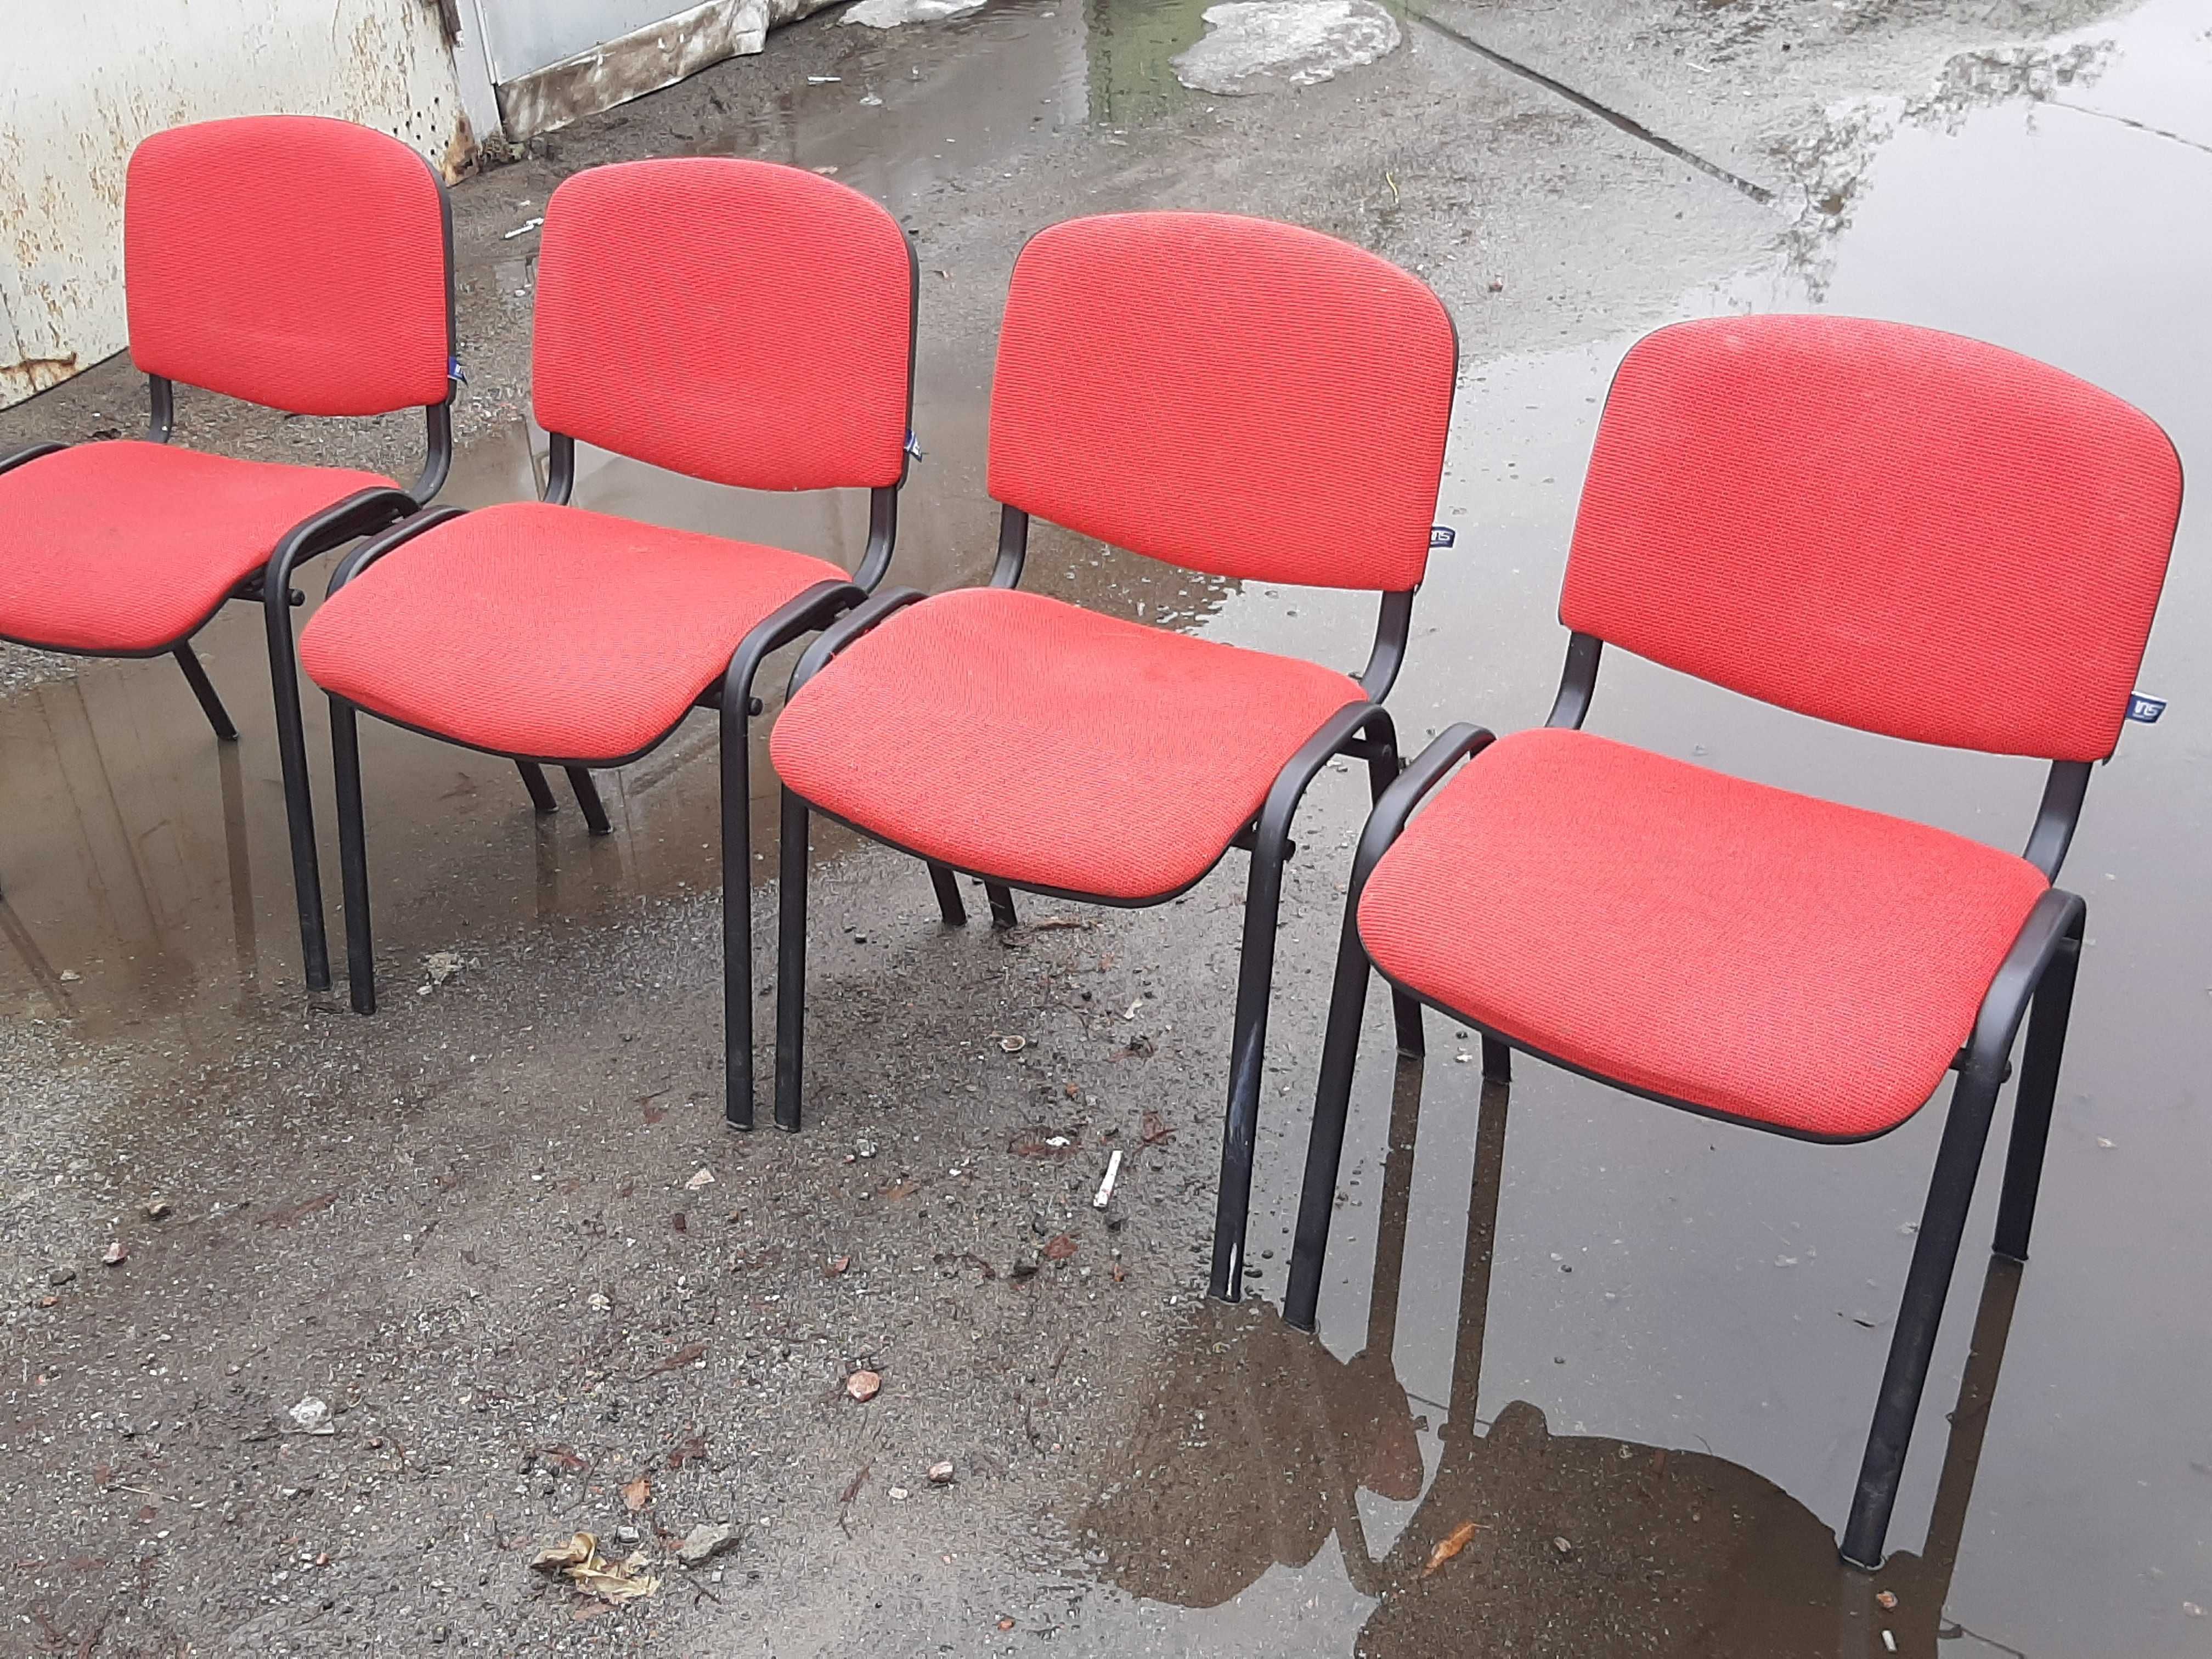 Мягкие стулья «Исо» ( Iso ) на железных ножках